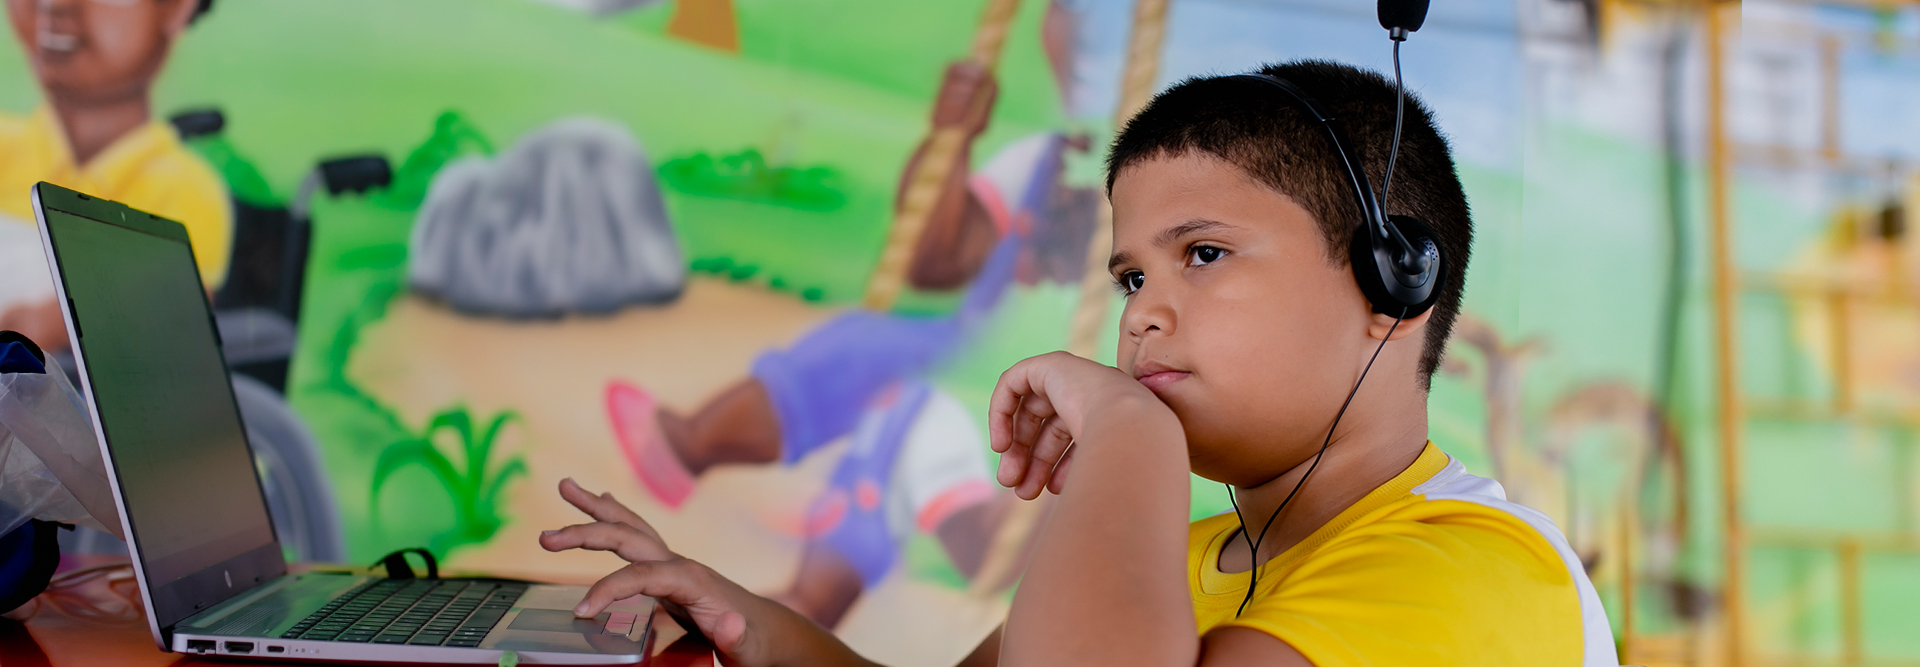 Um menino com fones de ouvido e um laptop em frente a um mural, interagindo com materiais educativos.